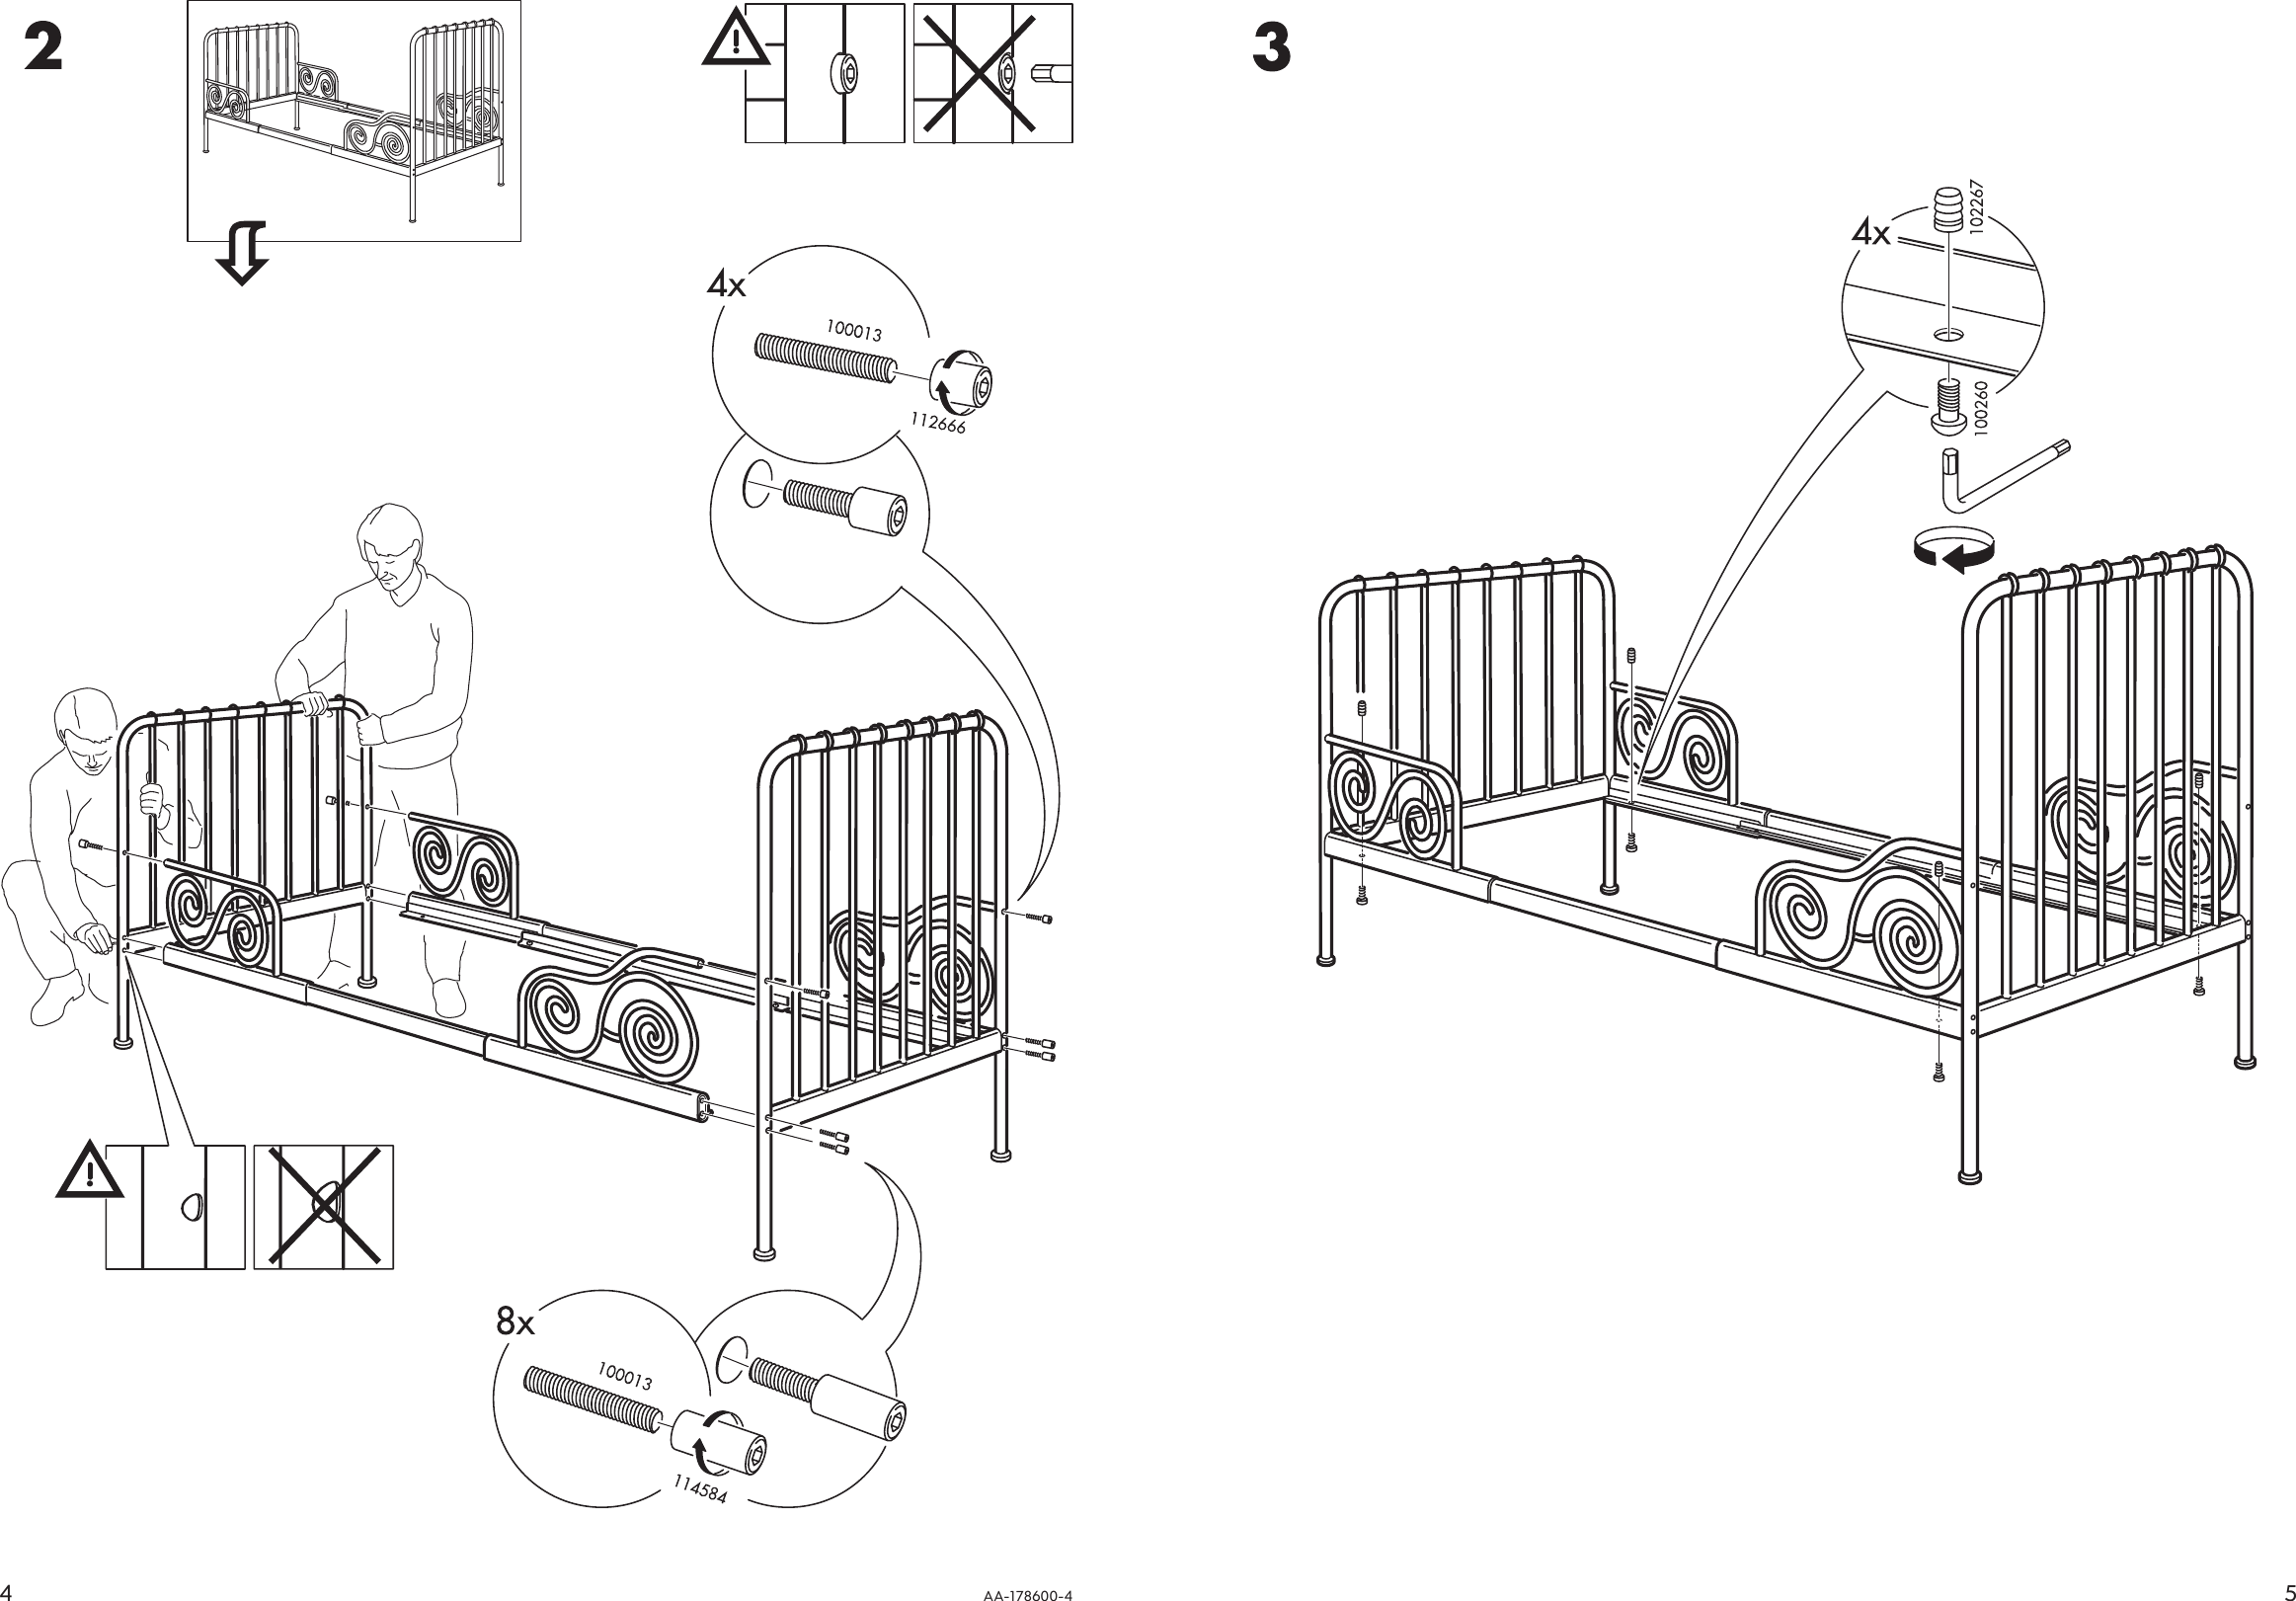 кровать икеа двуспальная деревянная инструкция по сборке